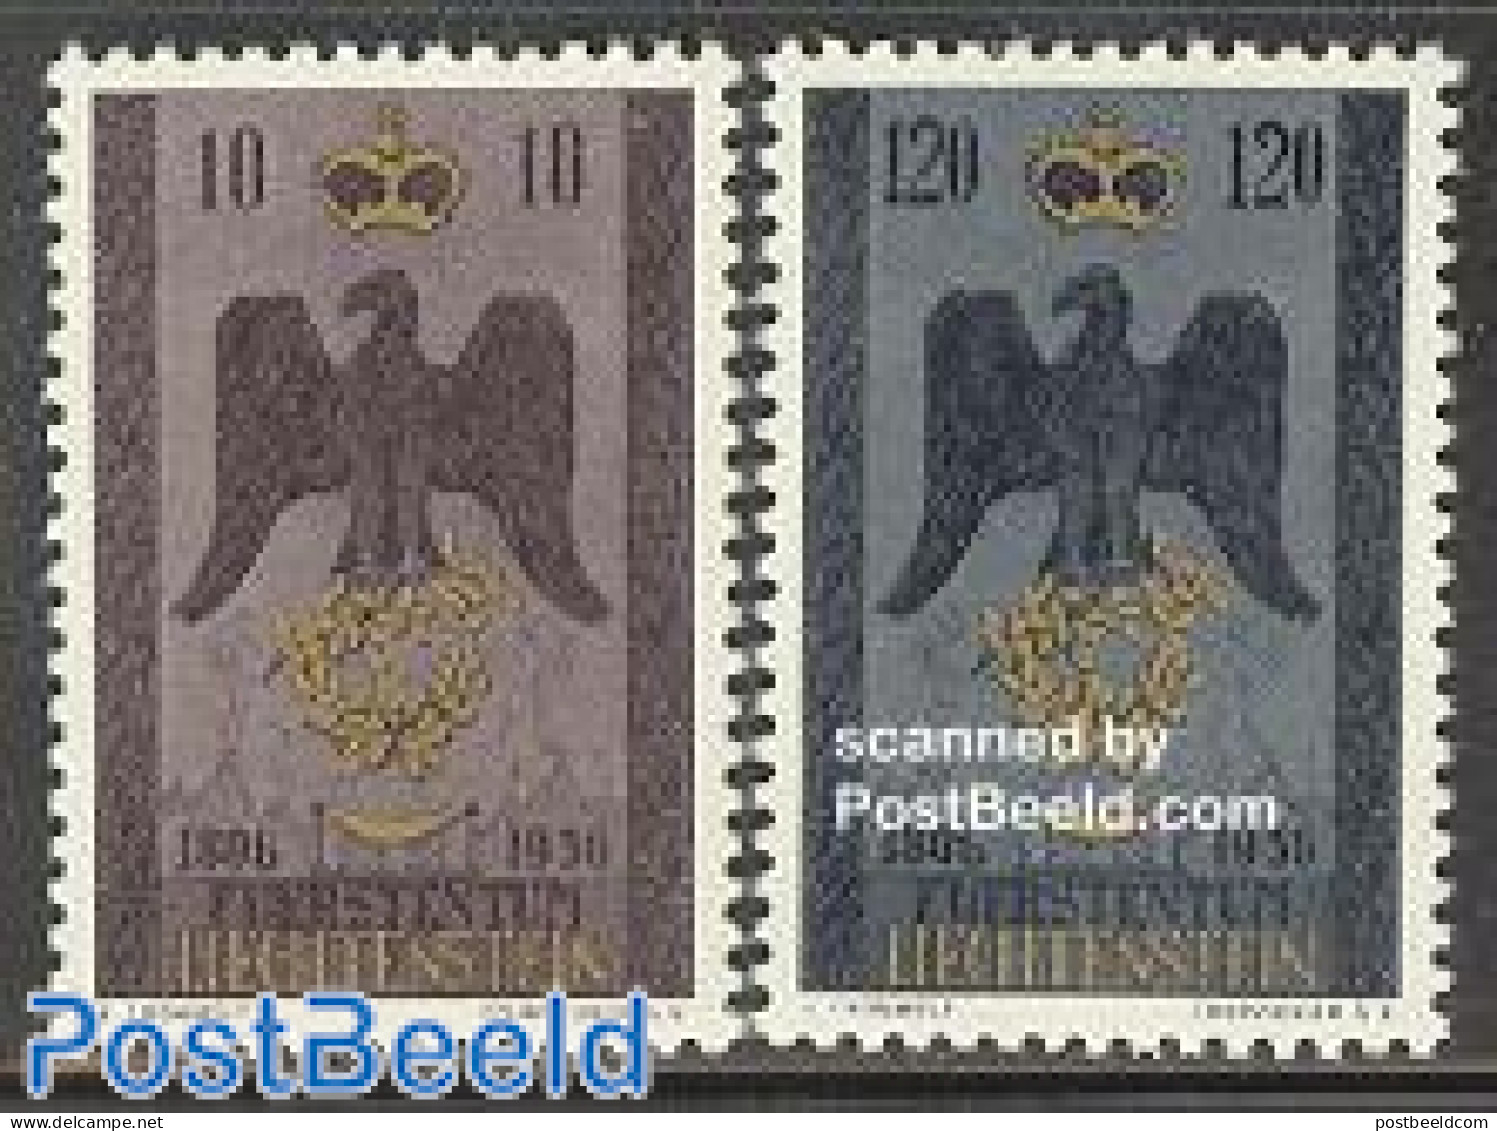 Liechtenstein 1956 Souvereinty 2v, Unused (hinged), History - Coat Of Arms - Ungebraucht